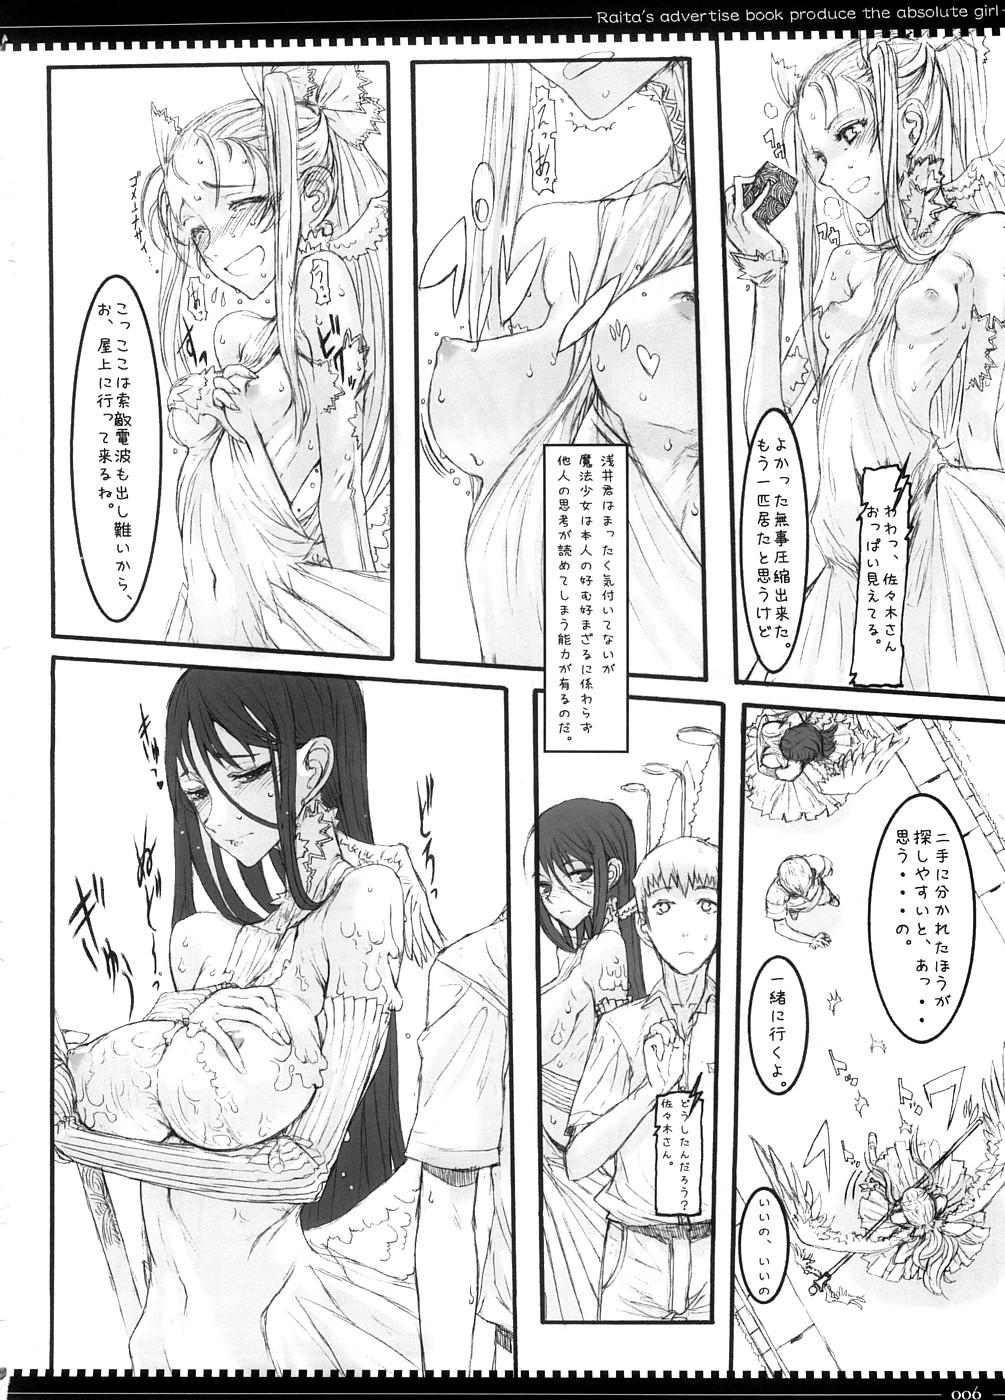 Juicy Mahou Shoujo 3.0 - Zero no tsukaima Zettai junpaku mahou shoujo Highheels - Page 5